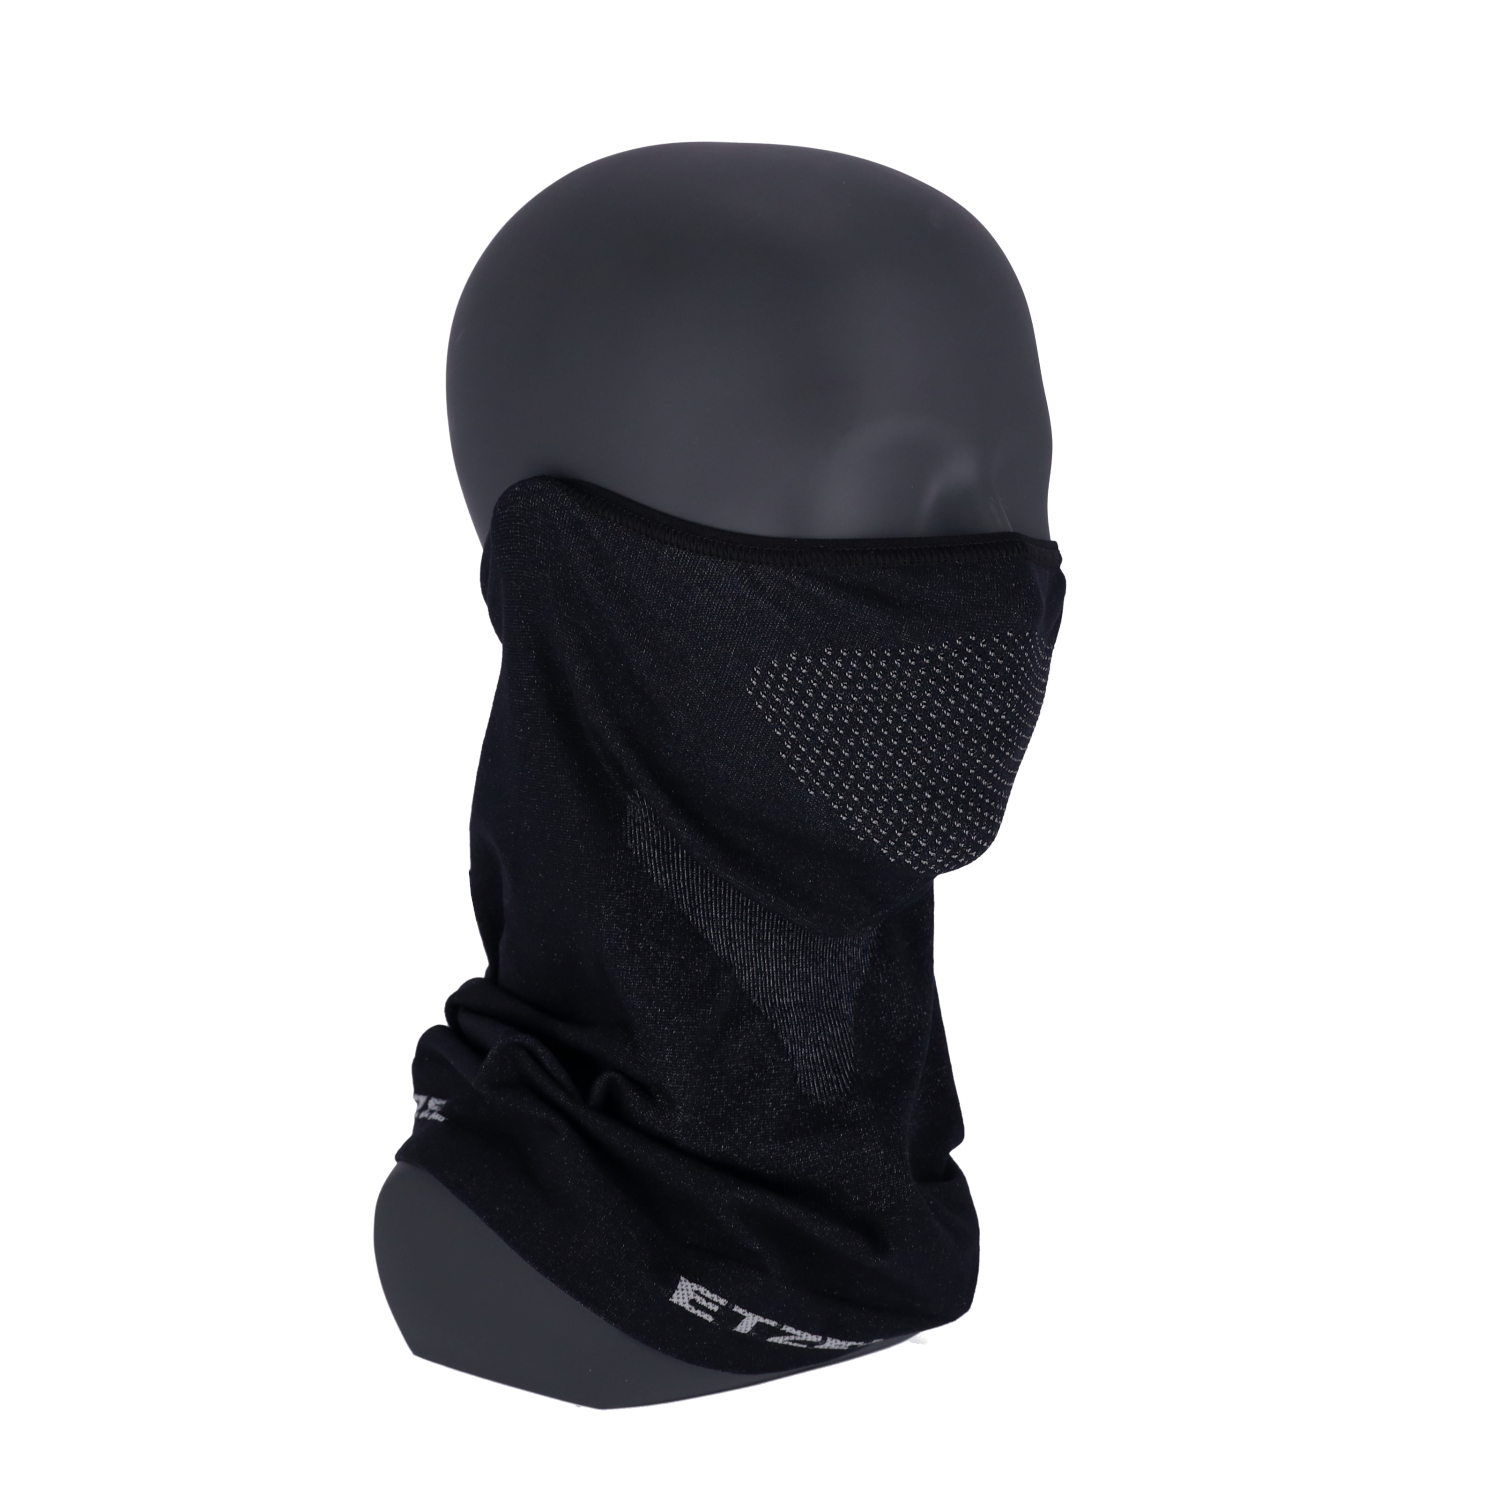 ETZEL® Tactical Face Shield schwarz, universal, Sturmhauben, Face Shield, Kopfbedeckung, Bekleidung, Polizei / Ordnungsbehörden